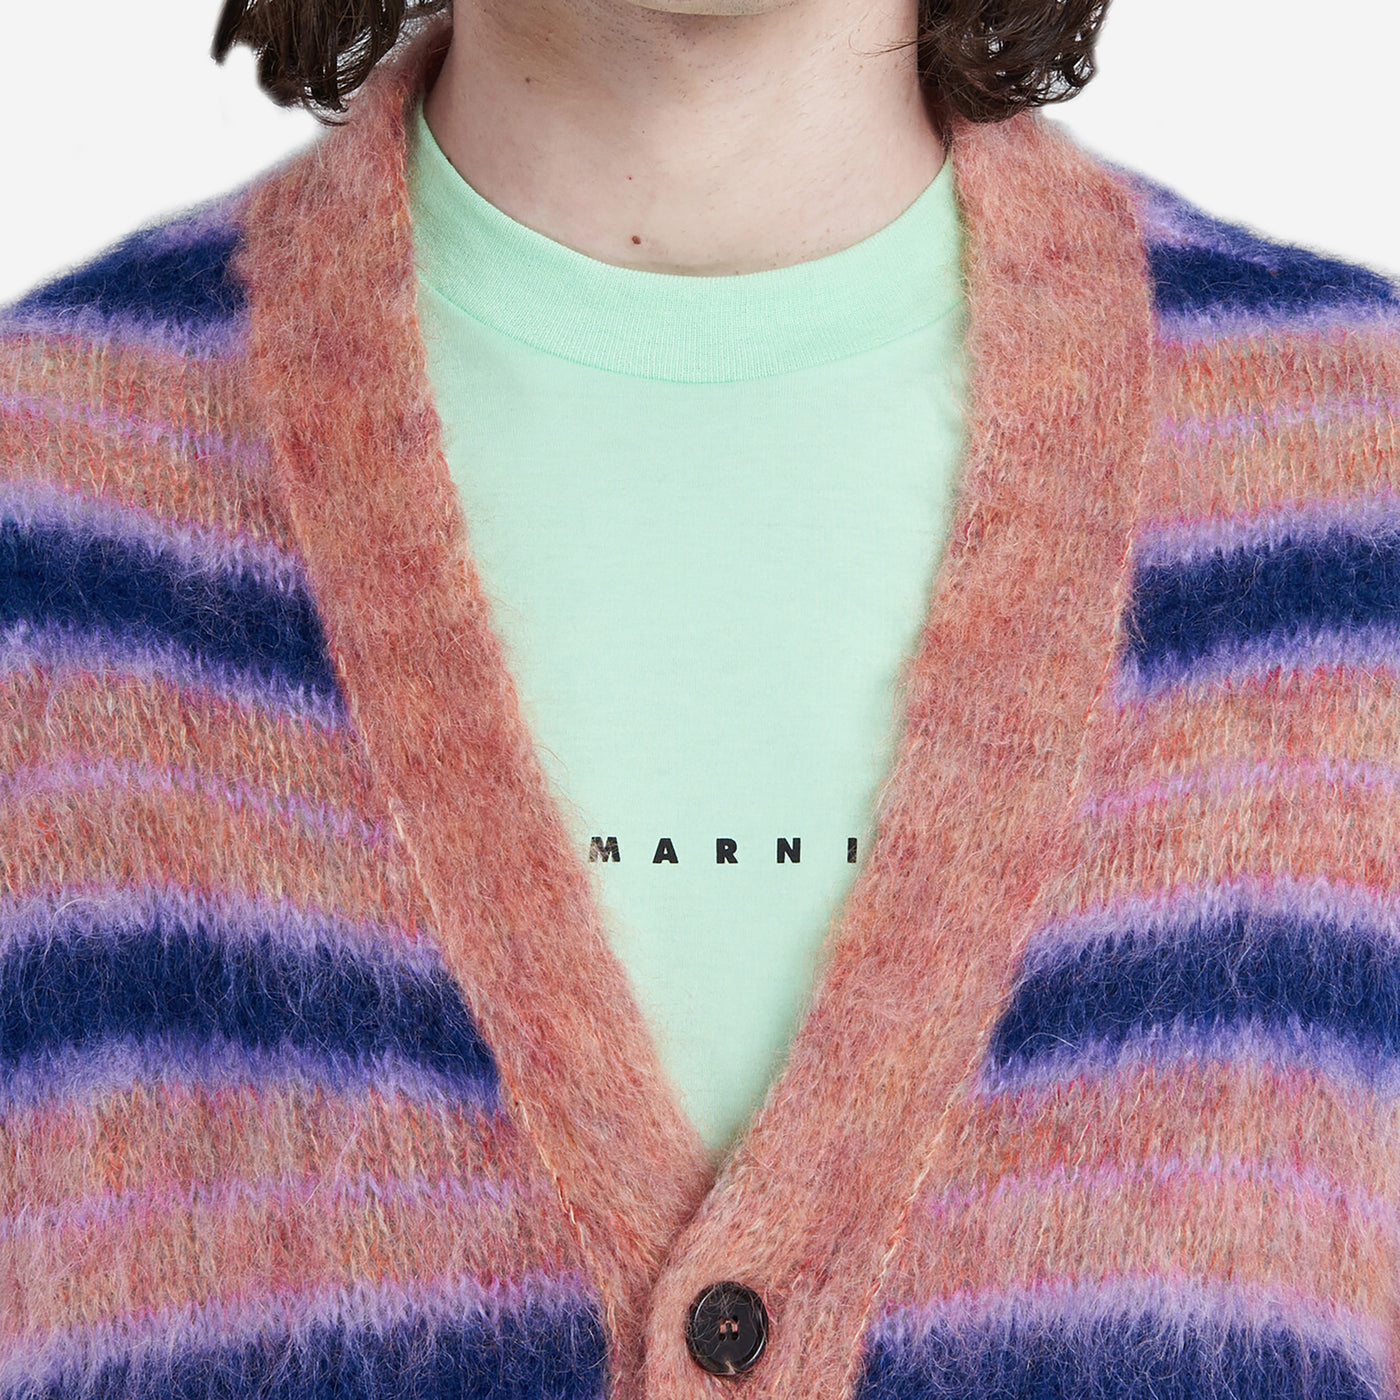 Marni Fuzzy Wuzzy Striped Cardigan